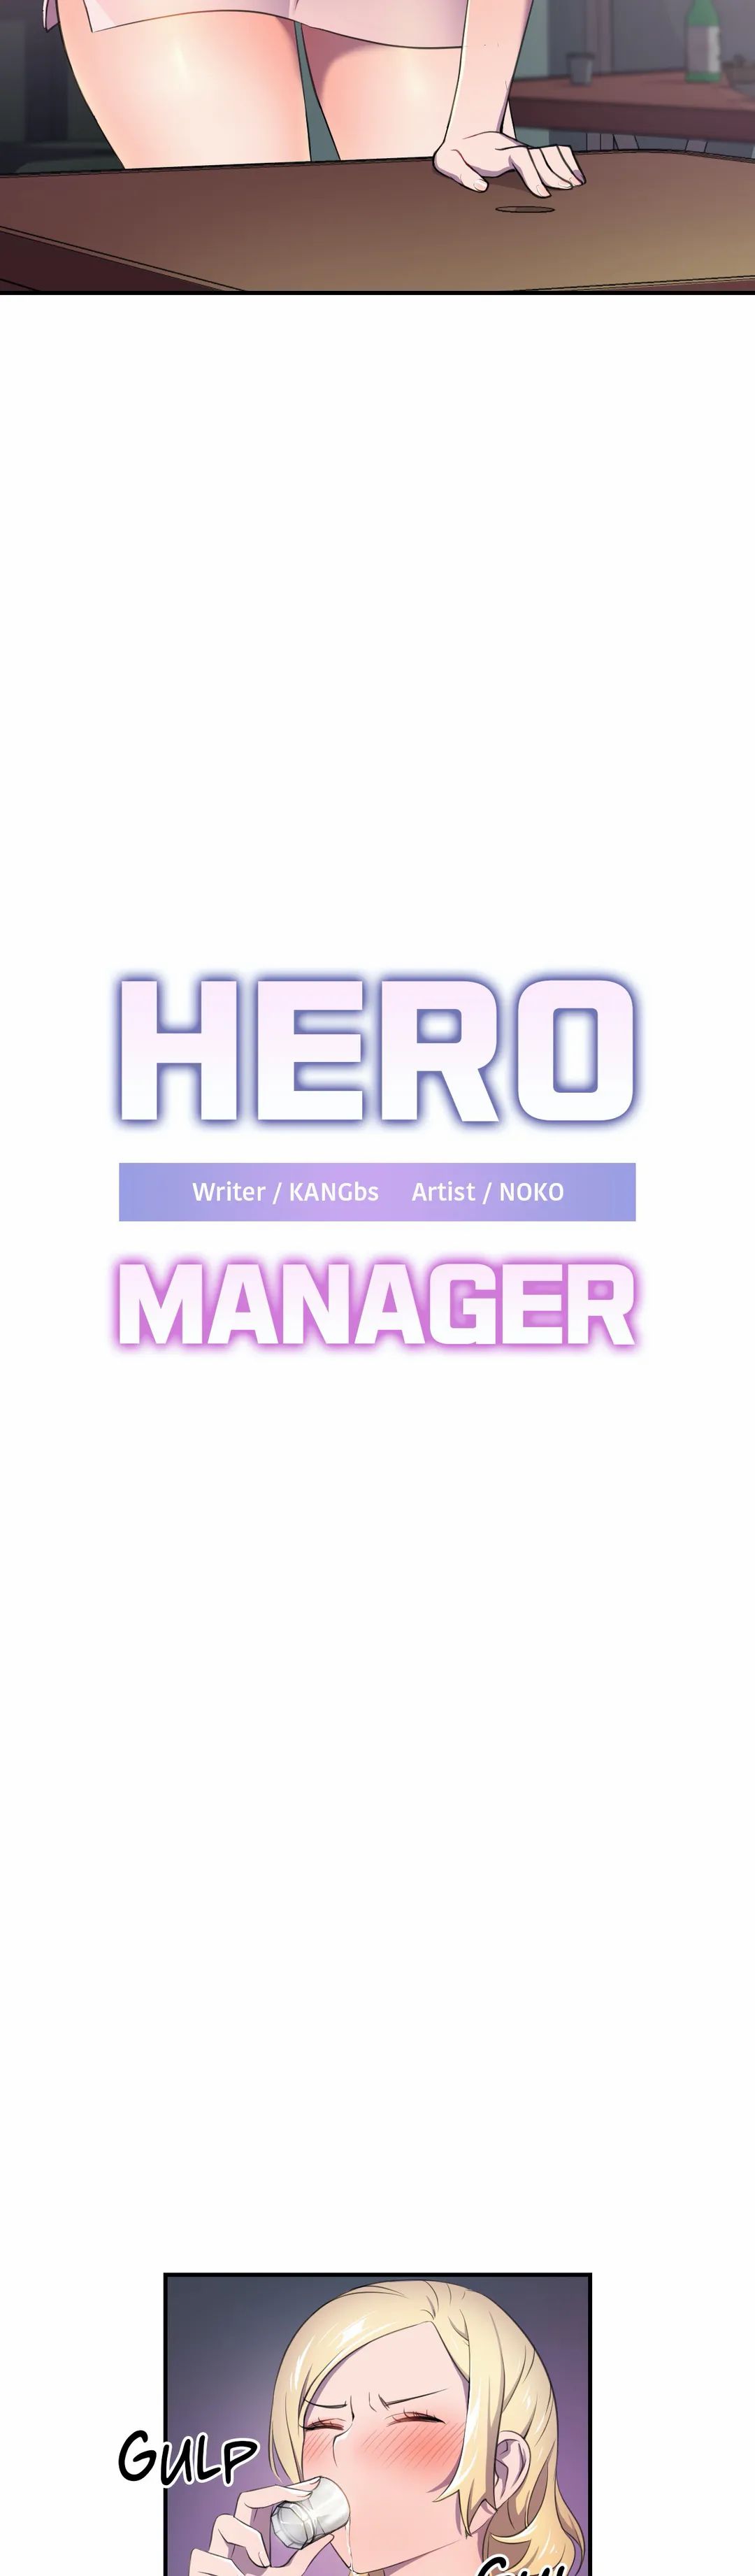 The image Hero Manager - Chapter 03 - WjLCBub1Ol1CADz - ManhwaManga.io